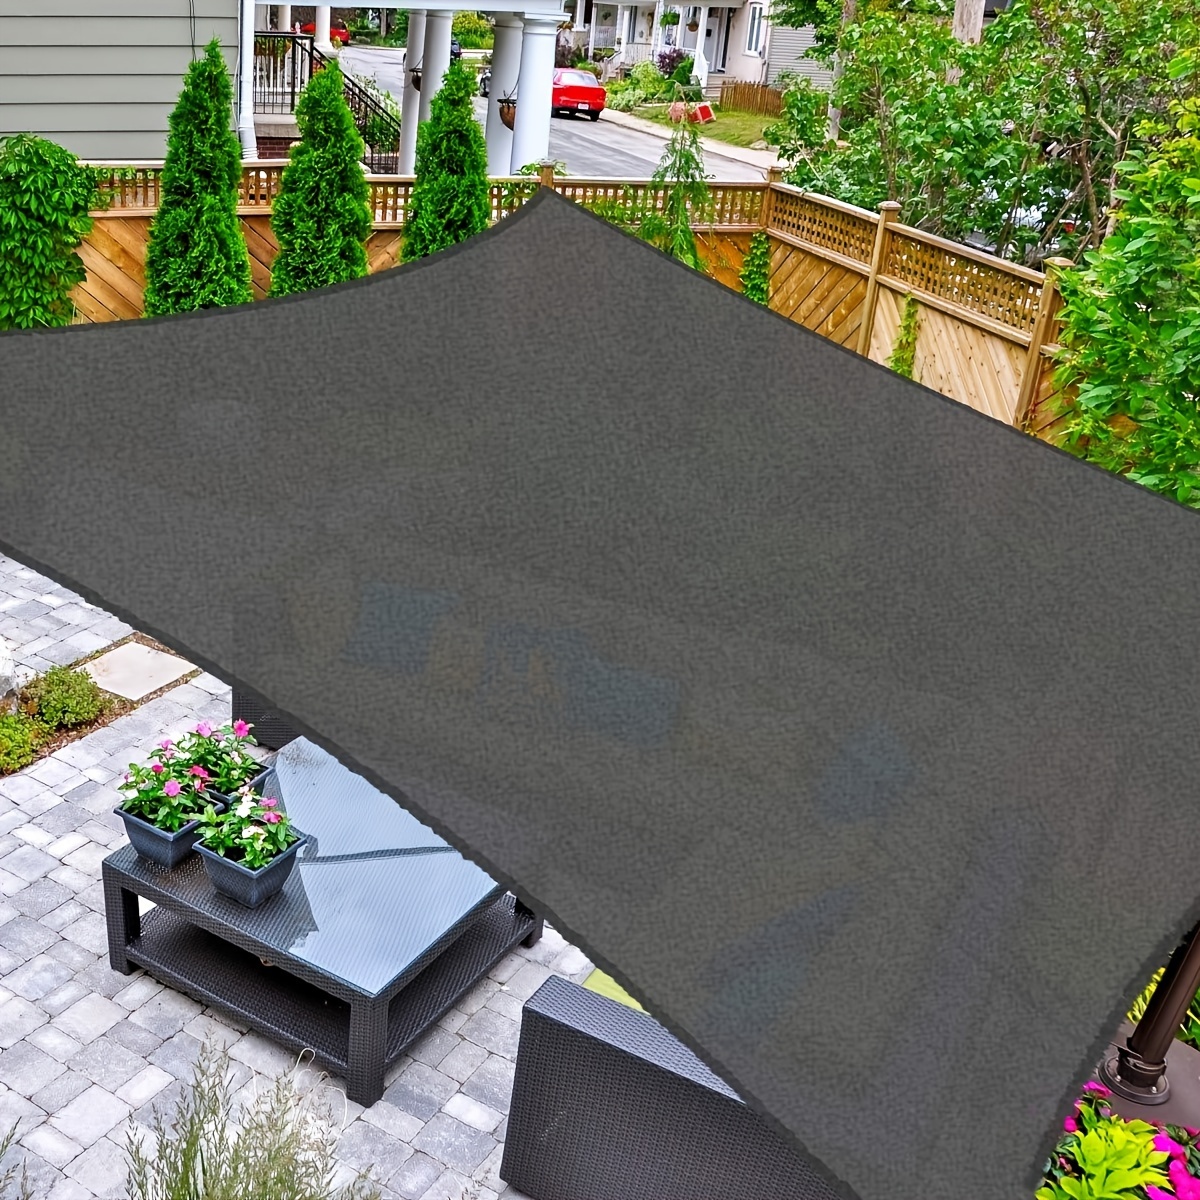 

Sun Shade Rectangle, 12' X 16' Uv Block Canopy For Patio Backyard Lawn Garden Outdoor Activities